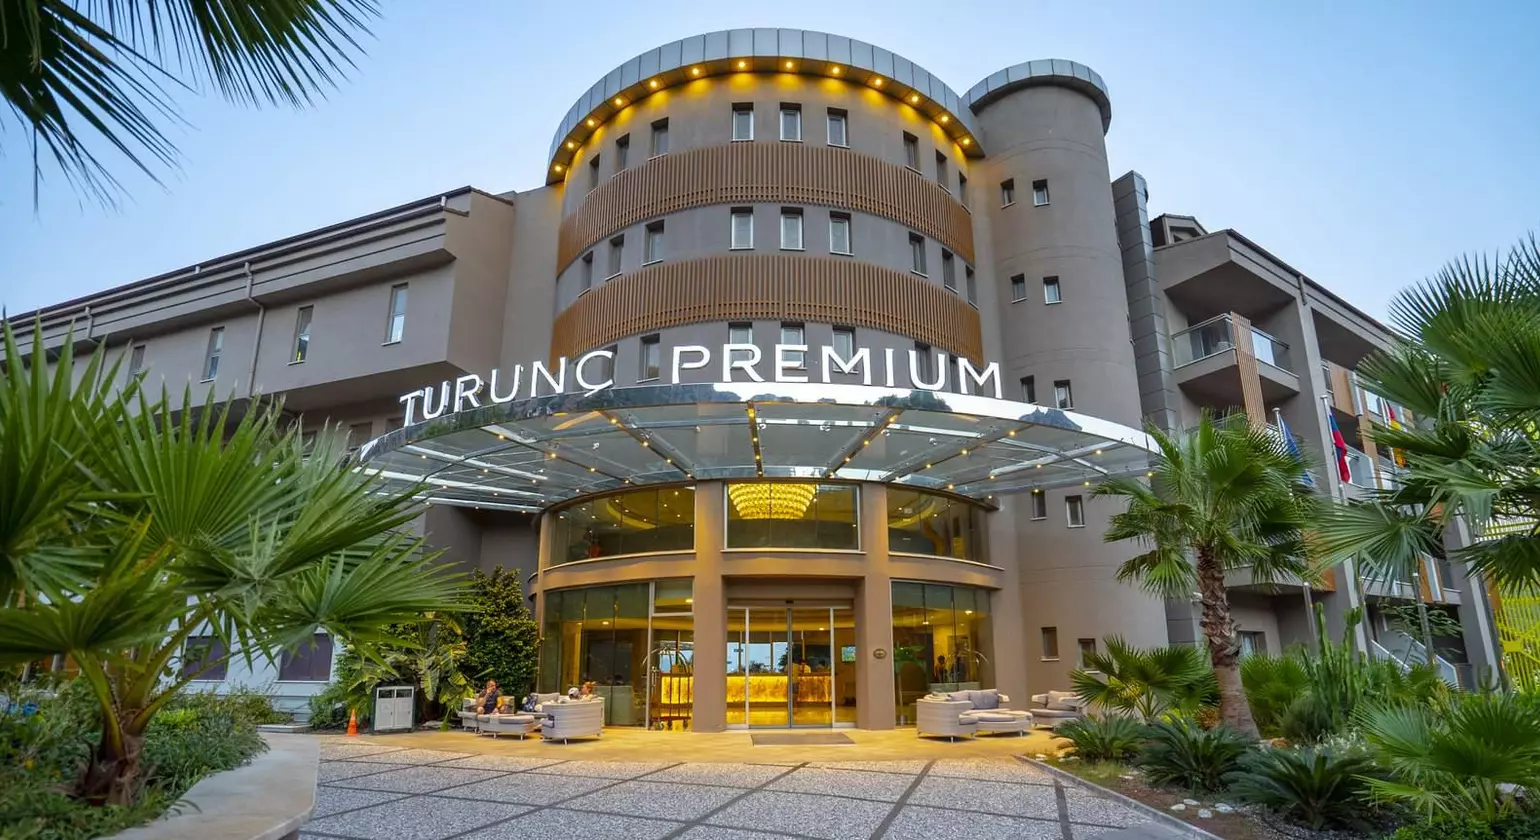 Turunç Premium Hotel